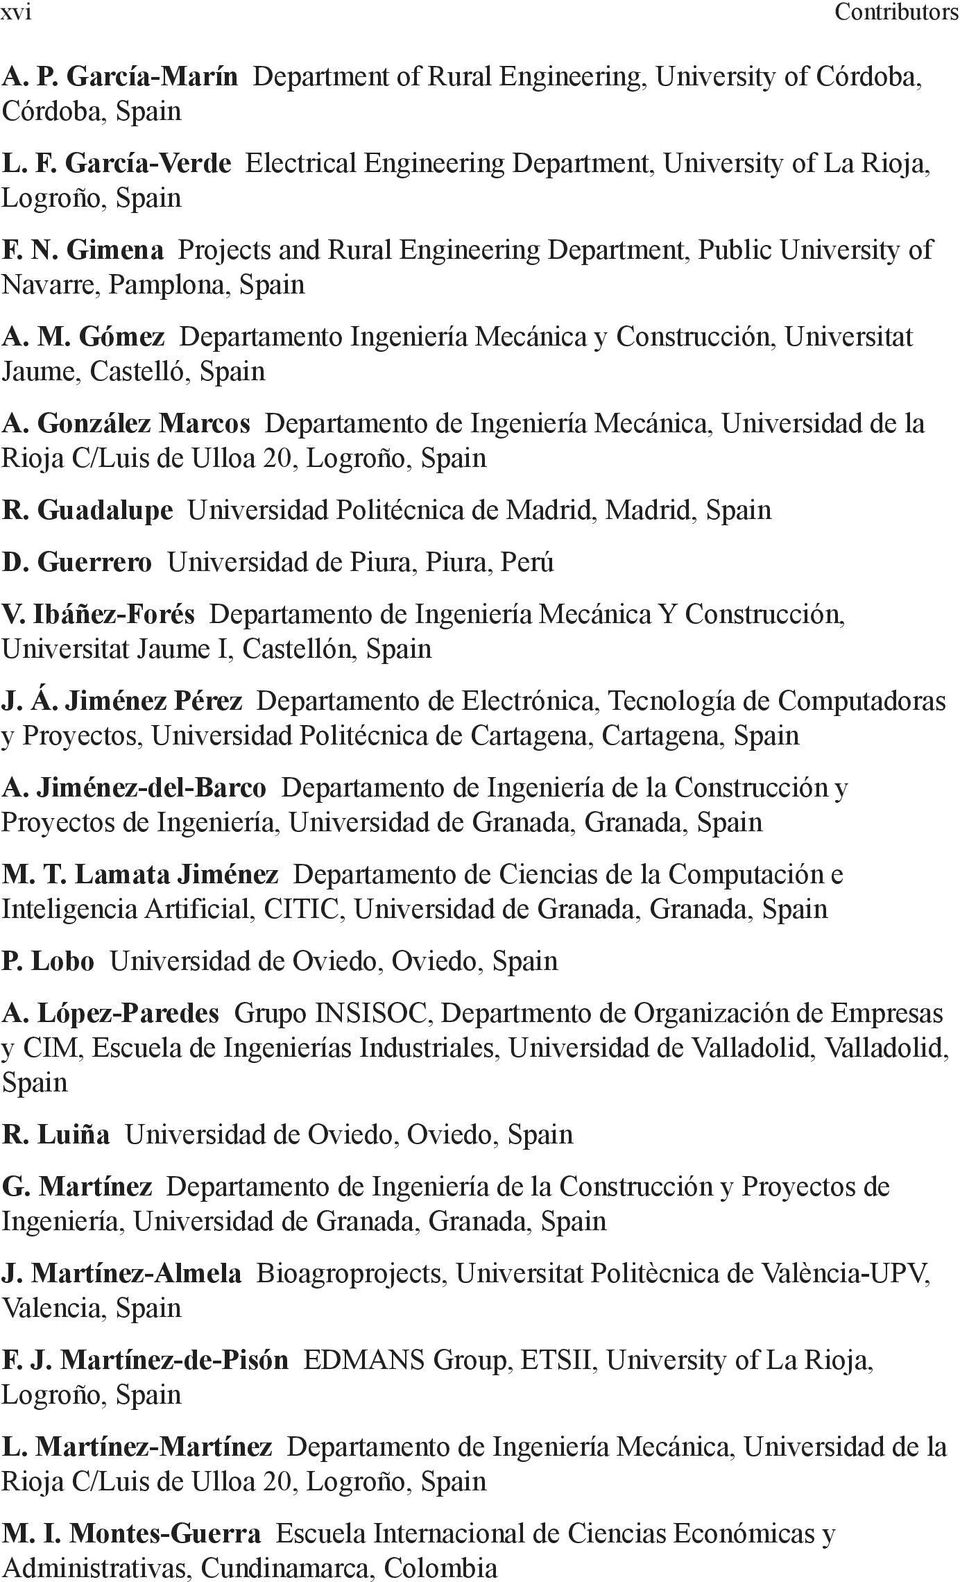 González Marcos Departamento de Ingeniería Mecánica, Universidad de la Rioja C/Luis de Ulloa 20, Logroño, R. Guadalupe Universidad Politécnica de Madrid, Madrid, D.